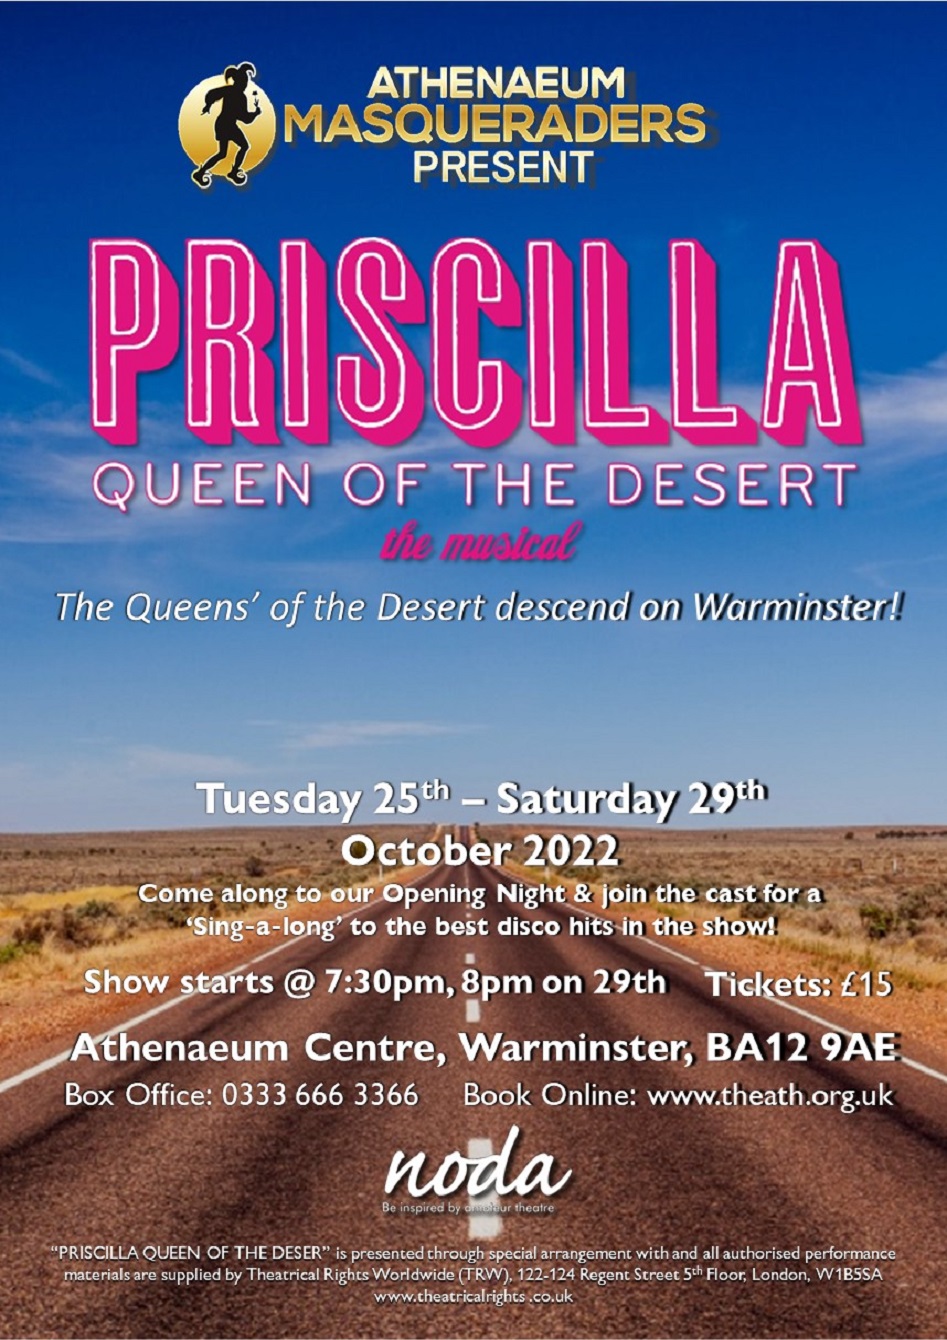 Priscilla Queen of the Desert!